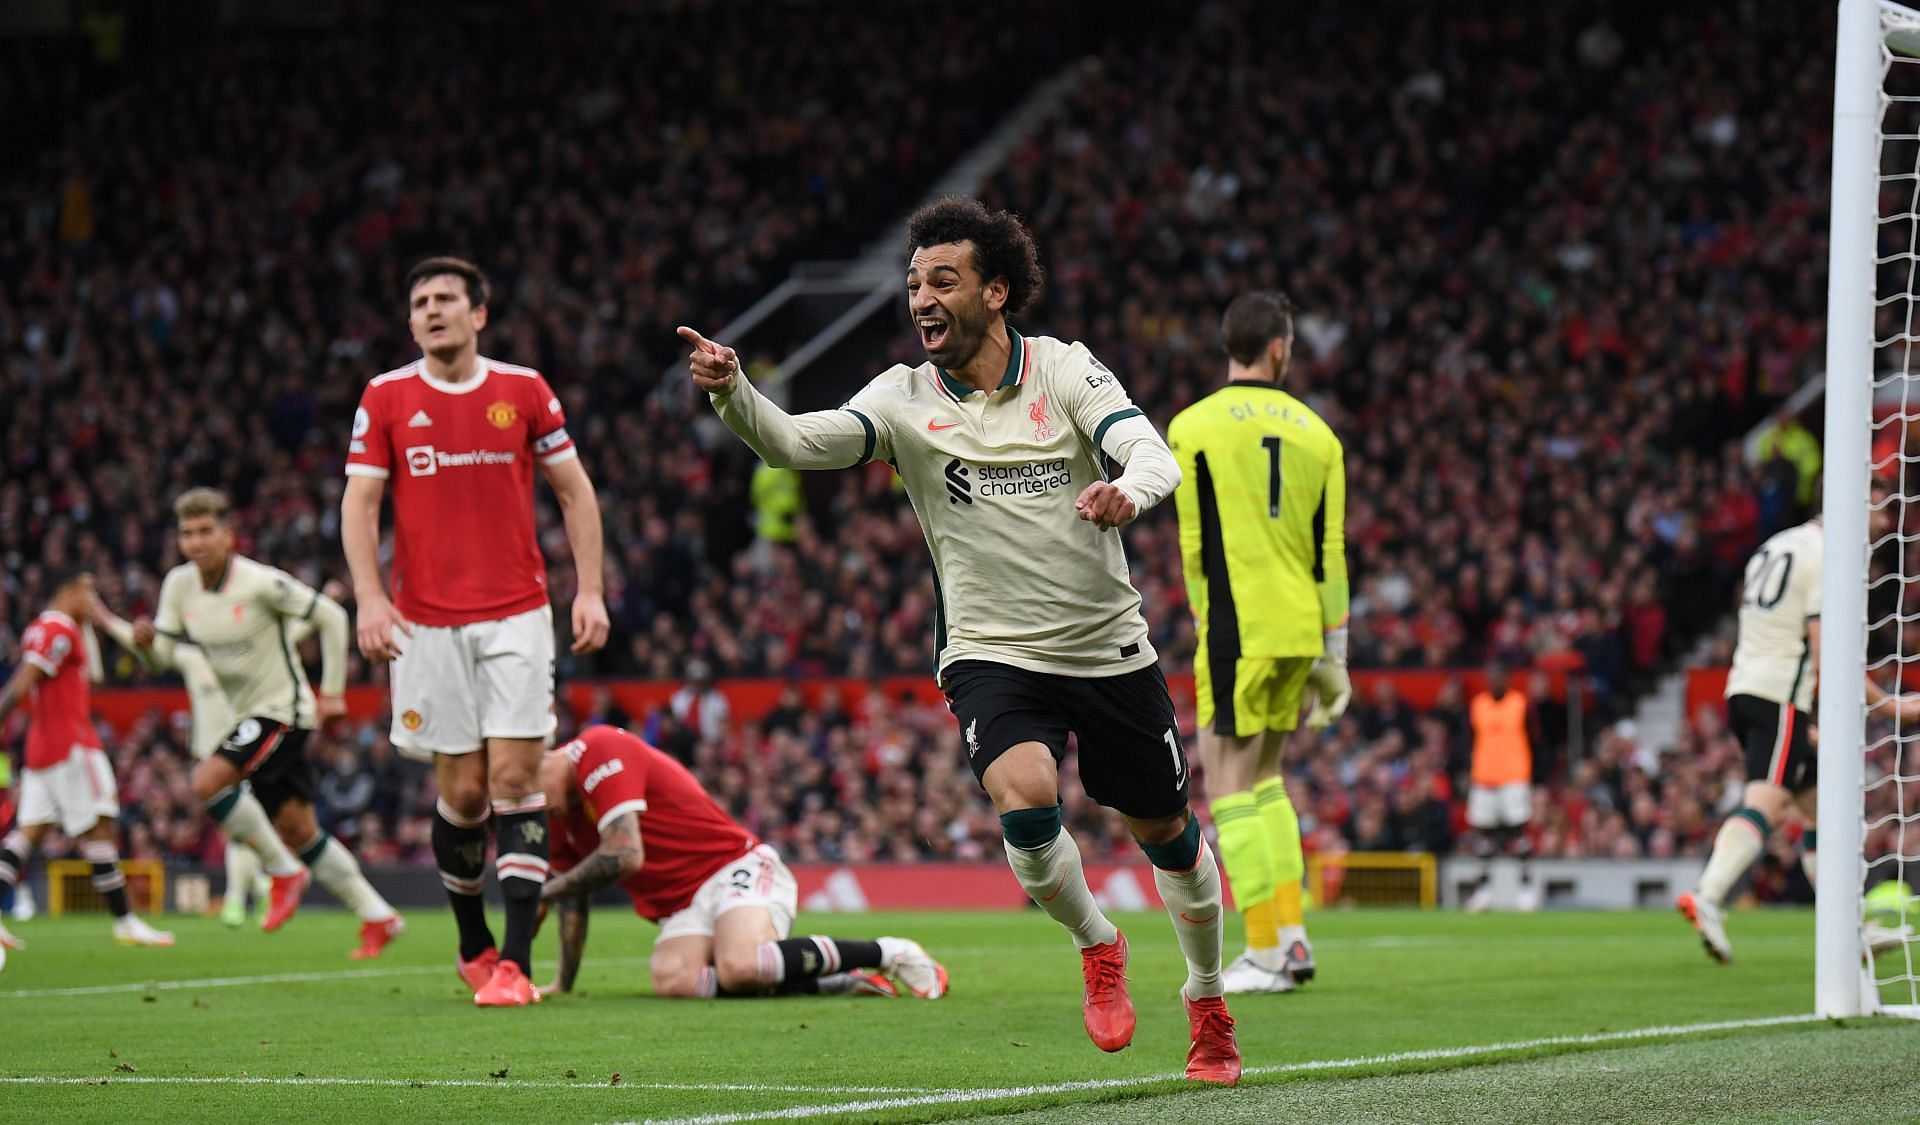 Mohamed Salah celebrates scoring for Liverpool.